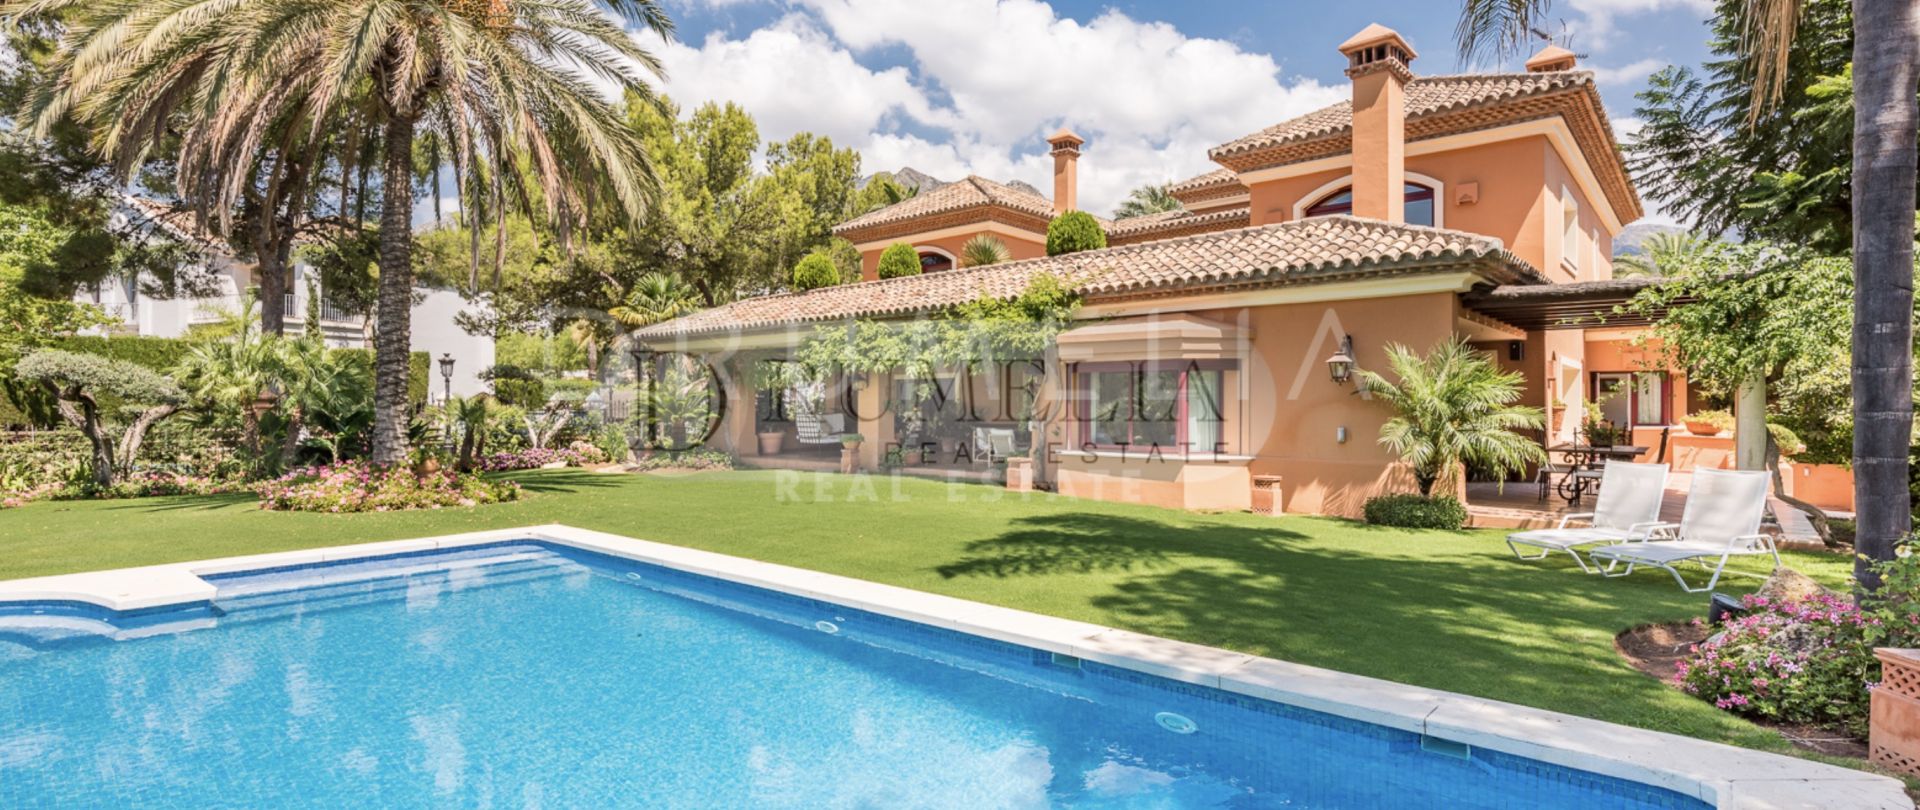 Heerlijke stijlvolle luxe villa in mediterrane stijl in Altos Reales, Golden Mile van Marbella.